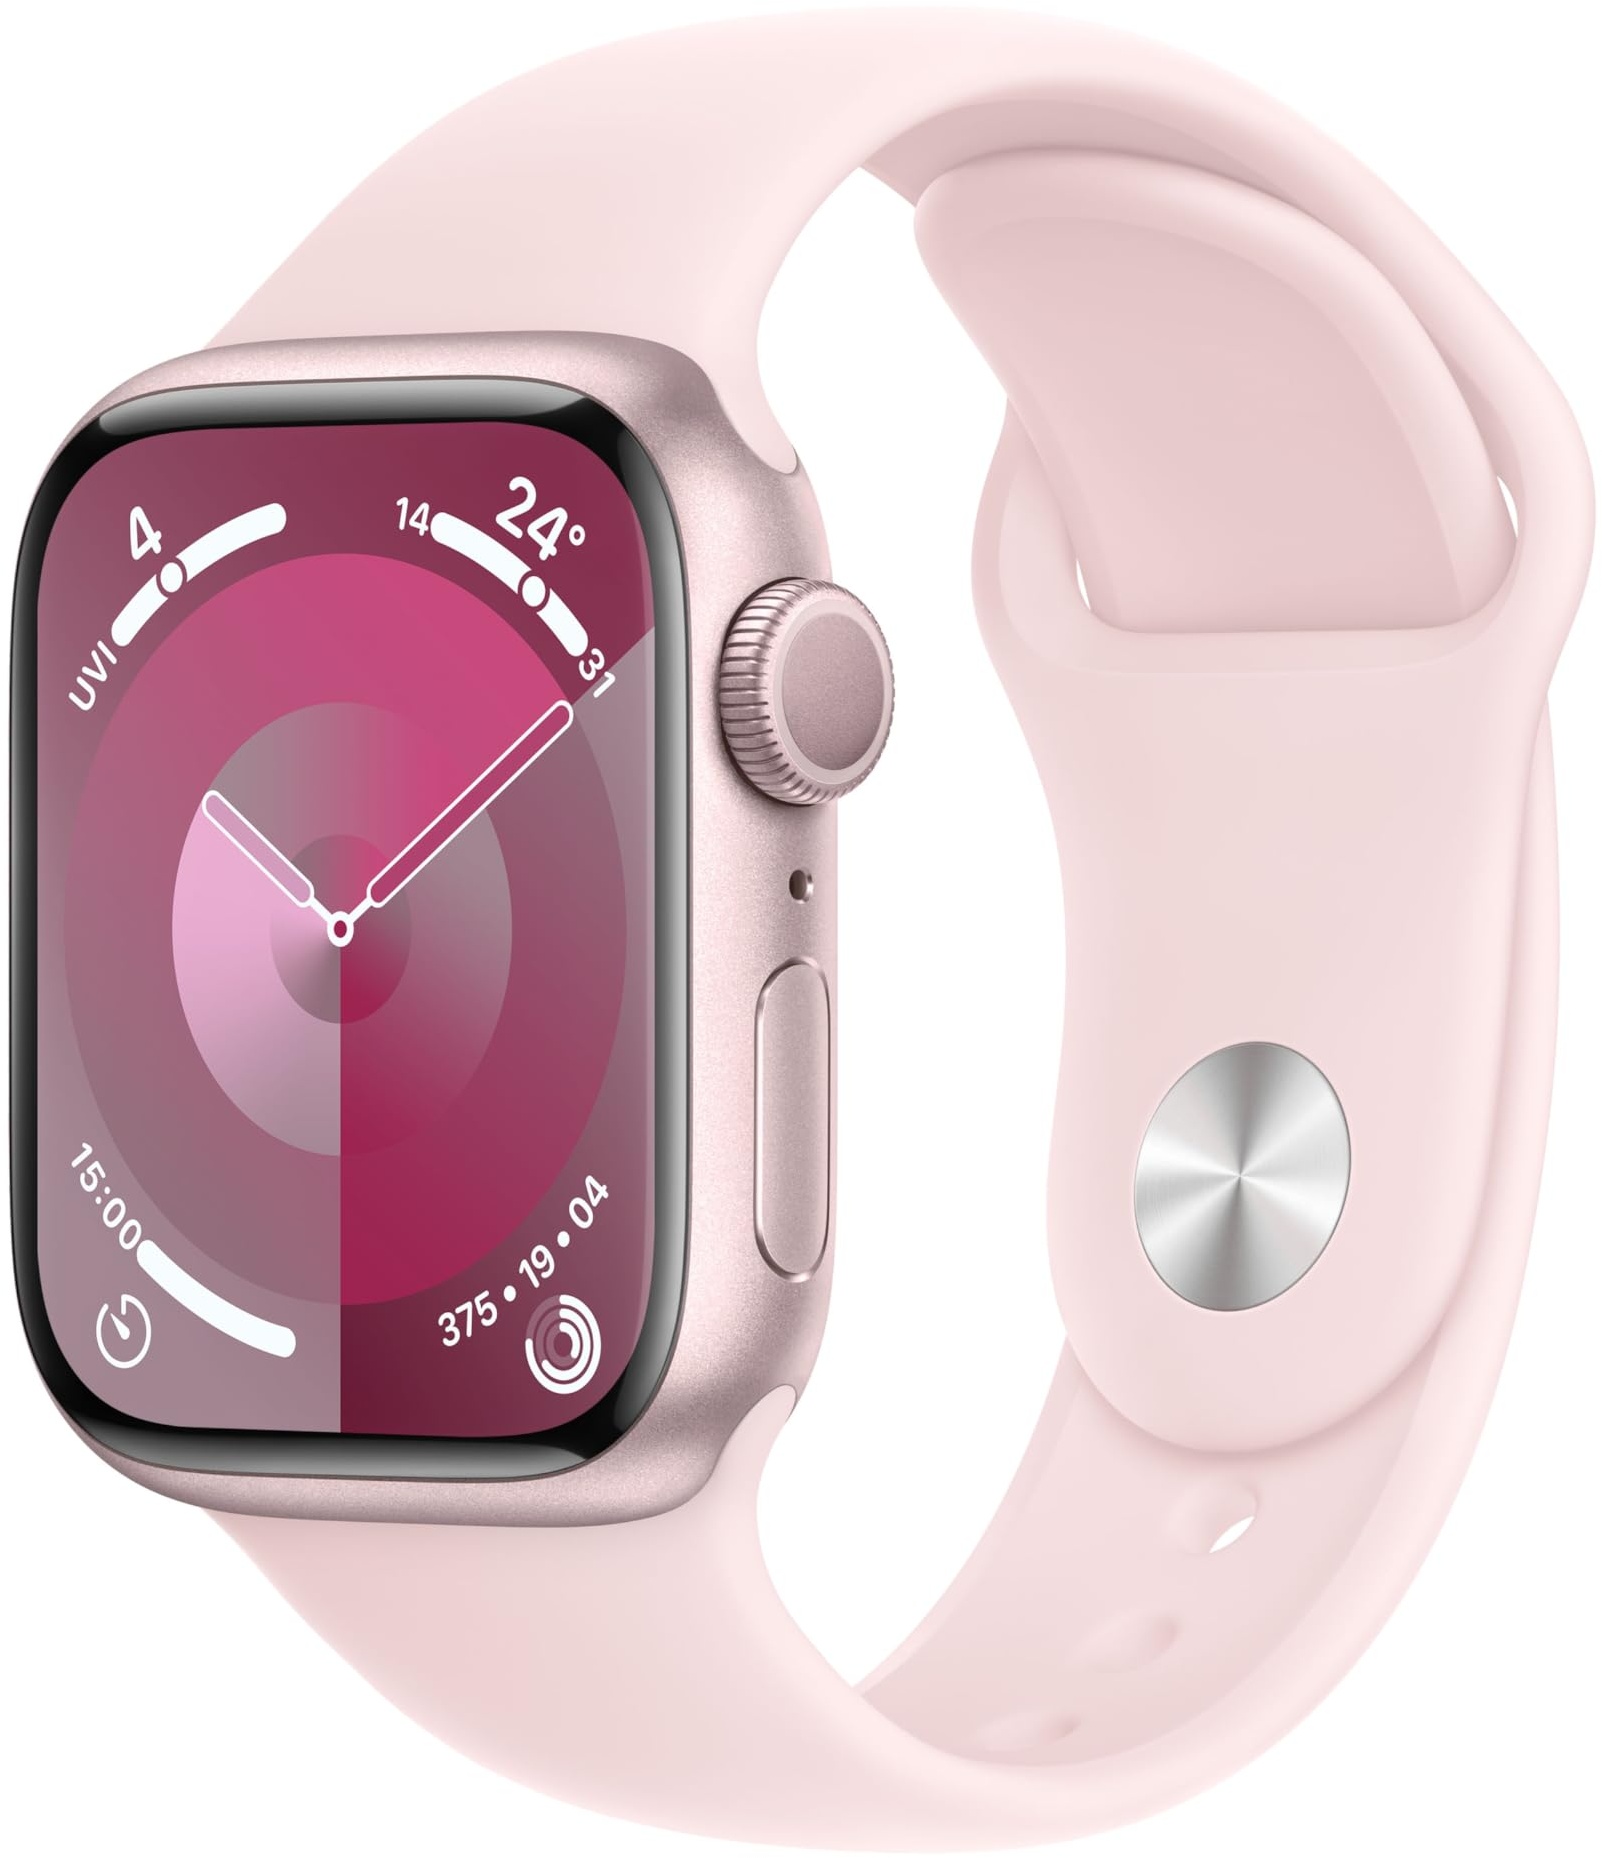 Apple Watch Series 9 (GPS, 41 mm) Smartwatch mit Aluminiumgehäuse in Pink und Sportarmband S/M in Hellrosa. Fitnesstracker, Blutsauerstoff und EKG Apps, Always-On Retina Display, Wasserschutz